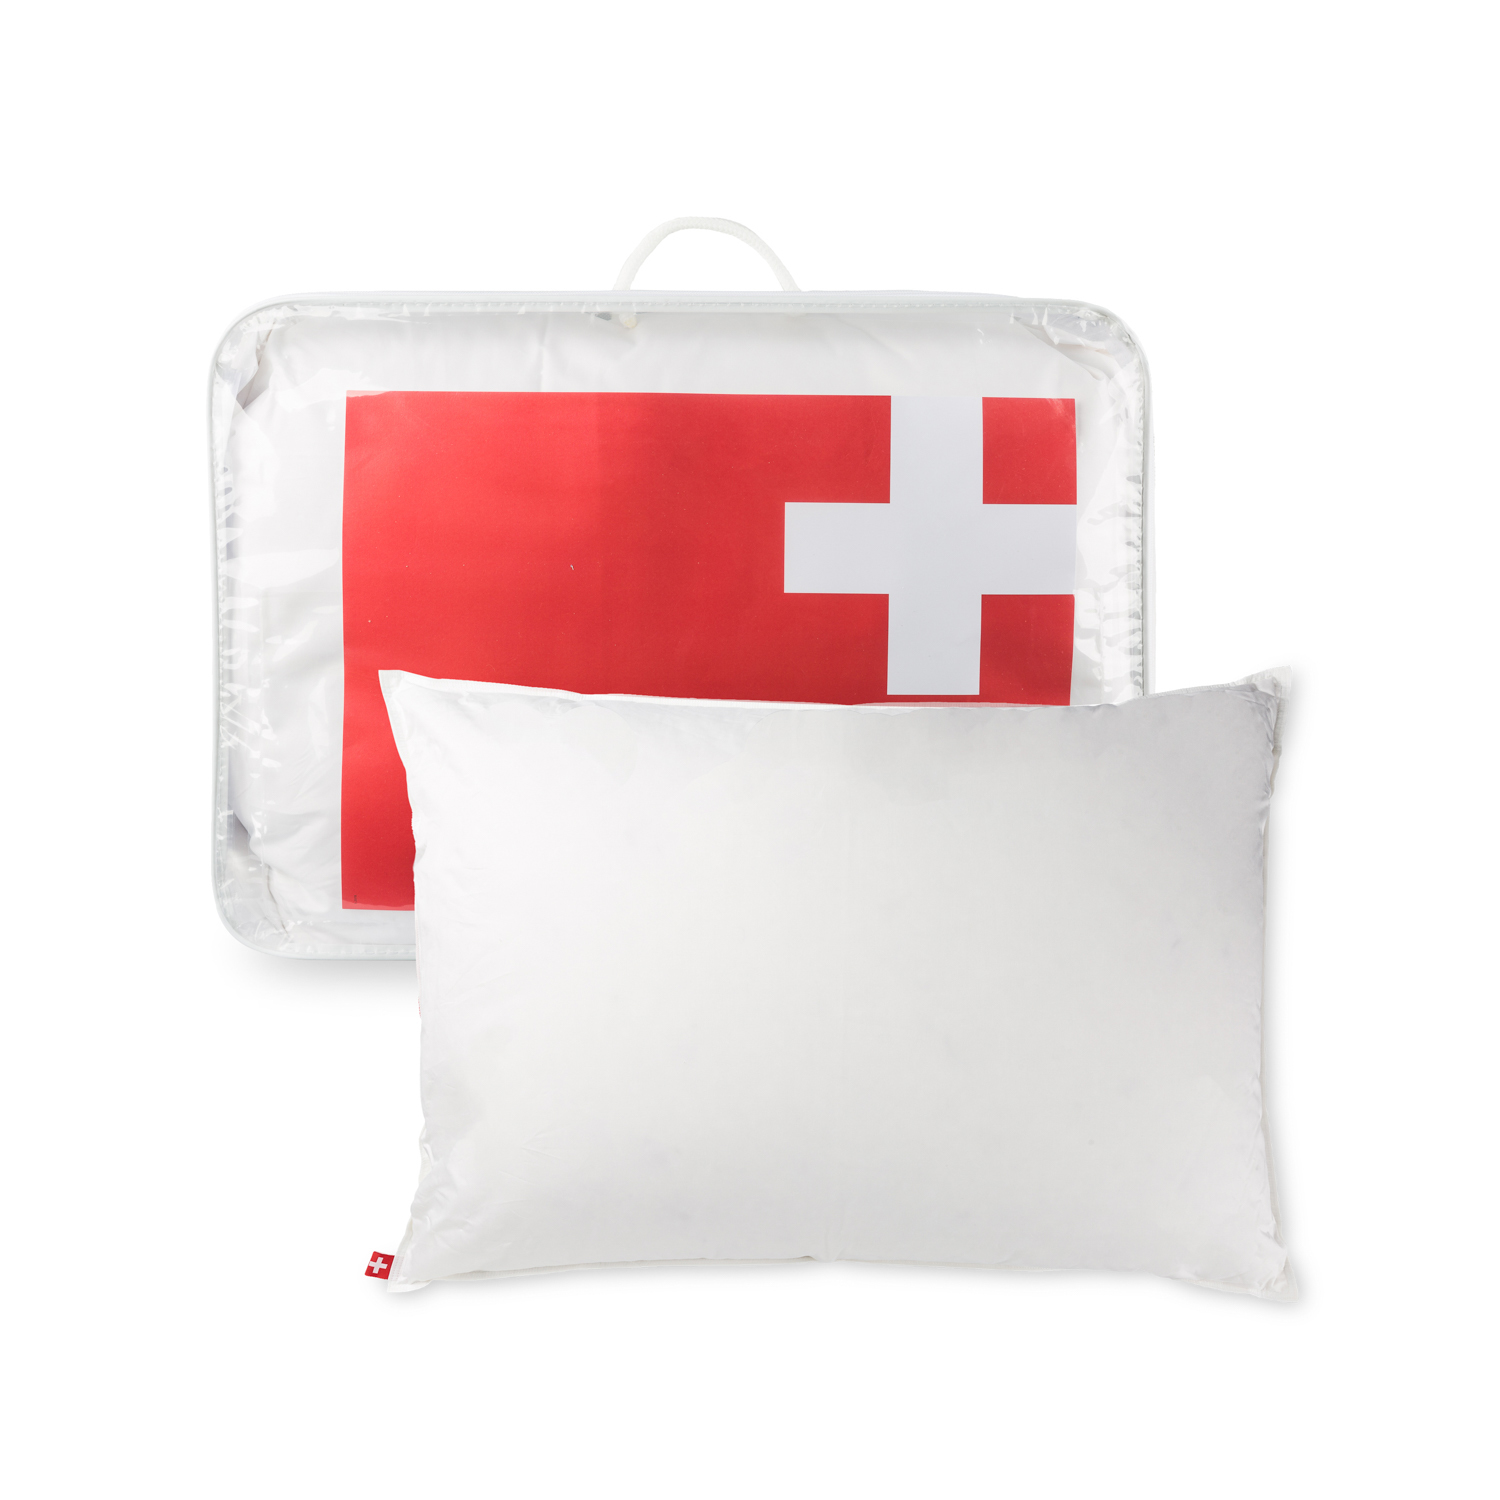 瑞士原产Dauny柔软型鹅绒枕头枕芯瑞士之梦系列 50X70cm  白色